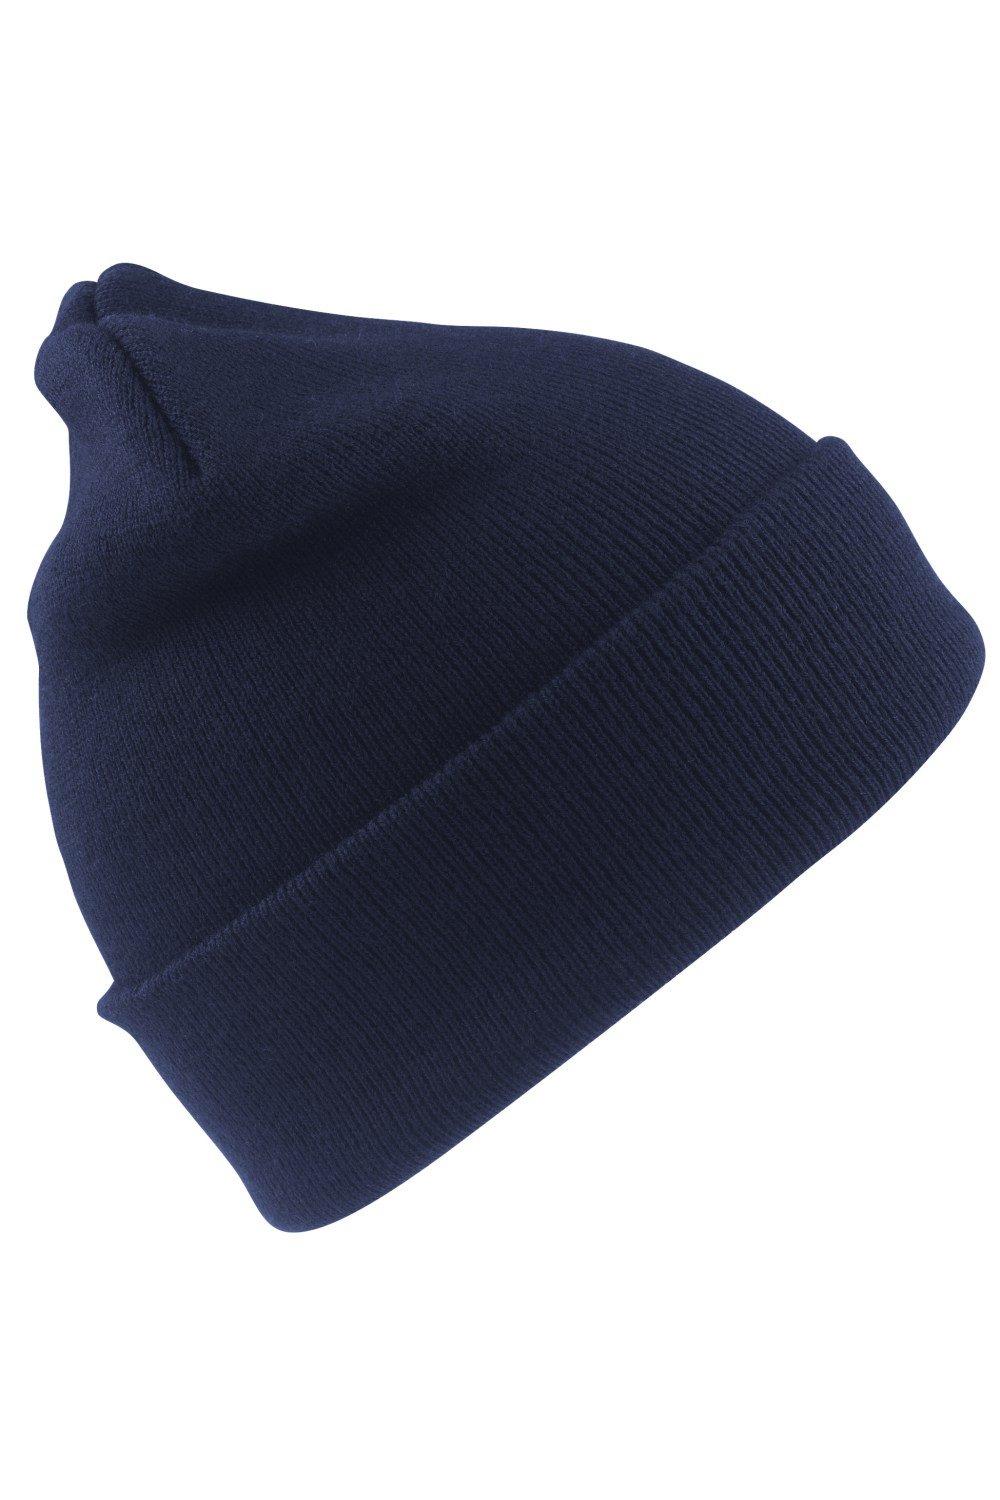 Шерстяная термолыжная/зимняя шапка с утеплителем Thinsulate 3M Result, темно-синий пряжа семеновская пряжа arina w 51 брусничный 5 шт по 100 г